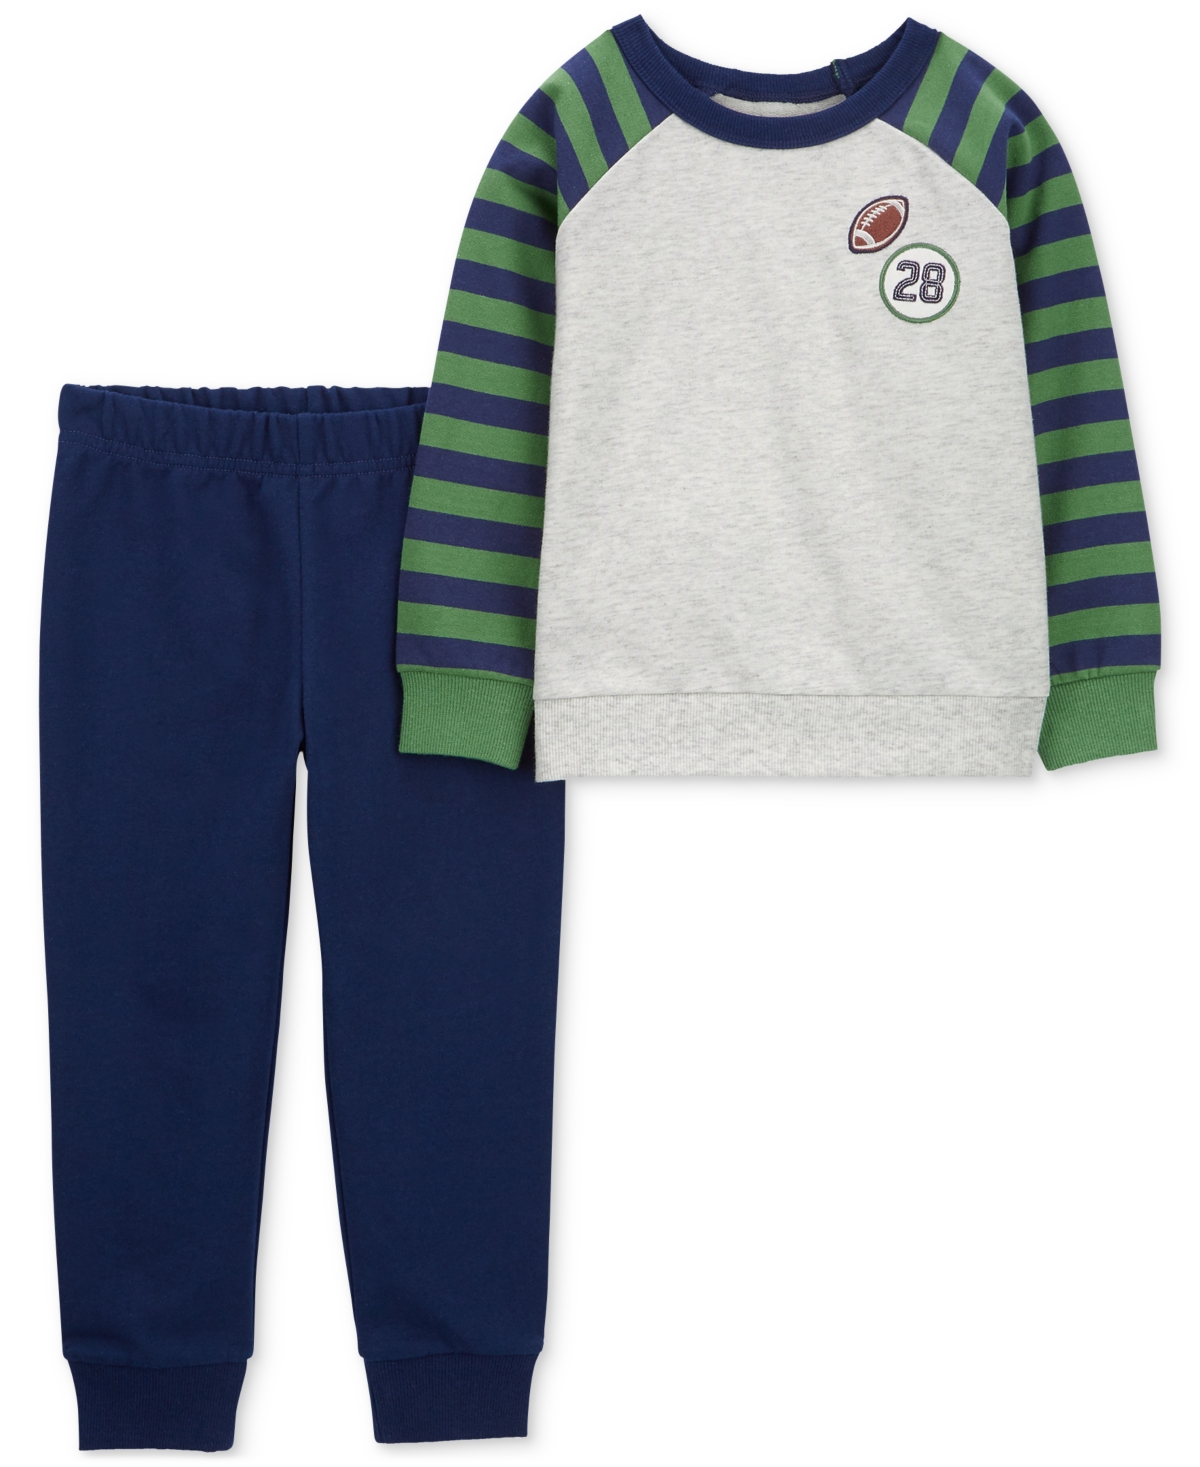 Carter's Babies' Toddler Boys Football Raglan T-shirt And Pants, 2 Piece Set In Green